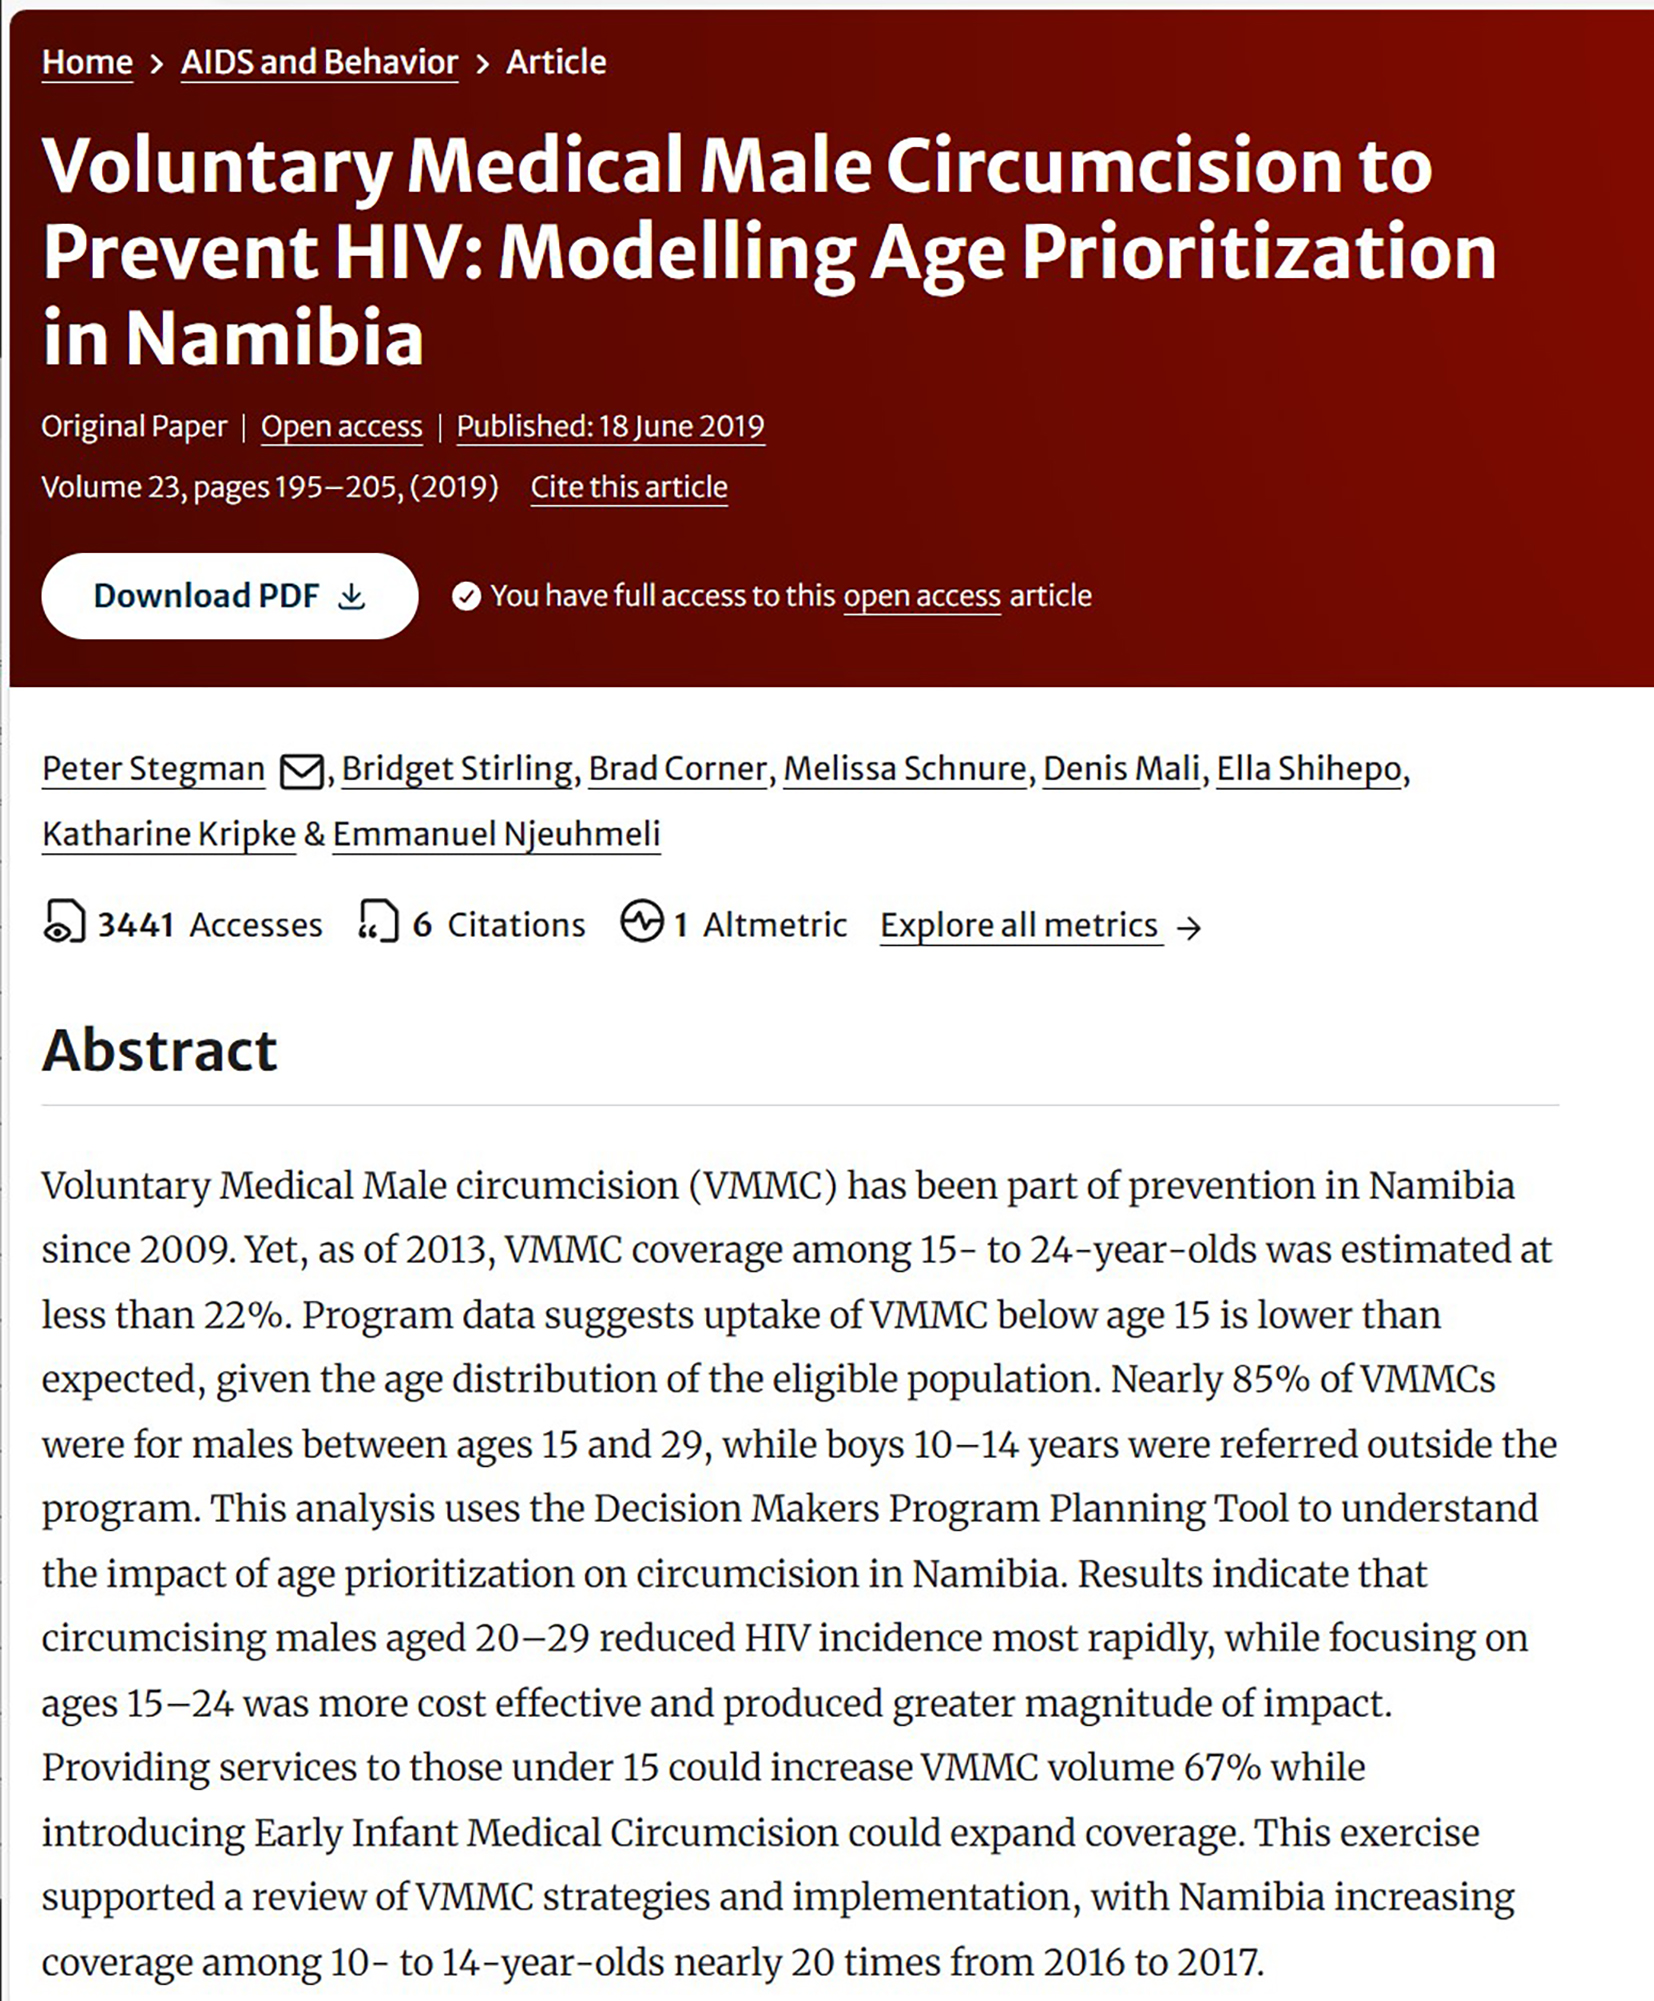 Circuncisão médica masculina voluntária para prevenir o VIH: Modelação da Prioridade de Idade em Na - covermibia